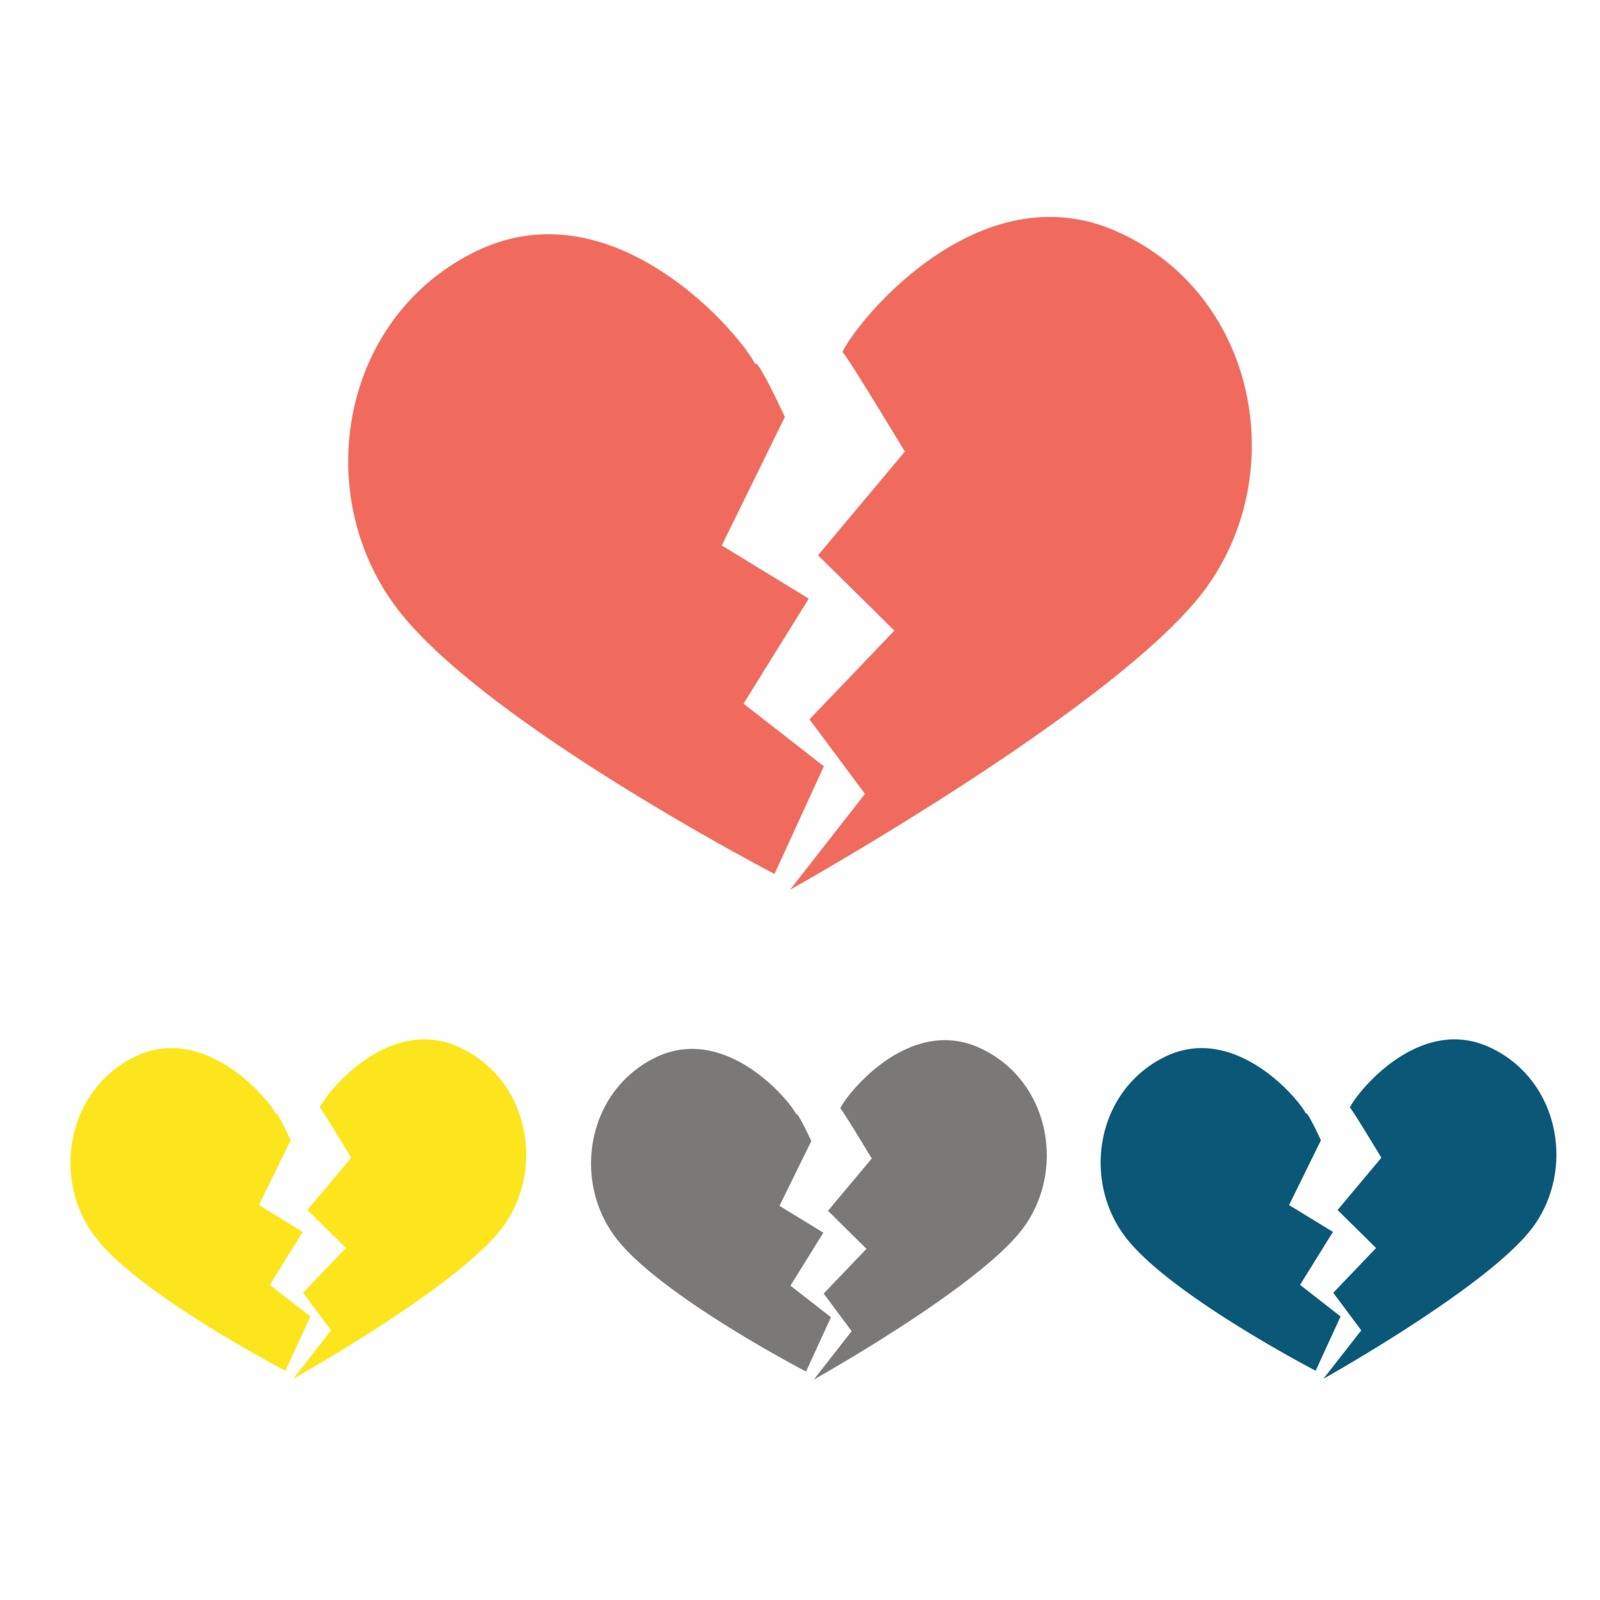 Heartbreak / broken heart or divorce flat icon for apps and websites